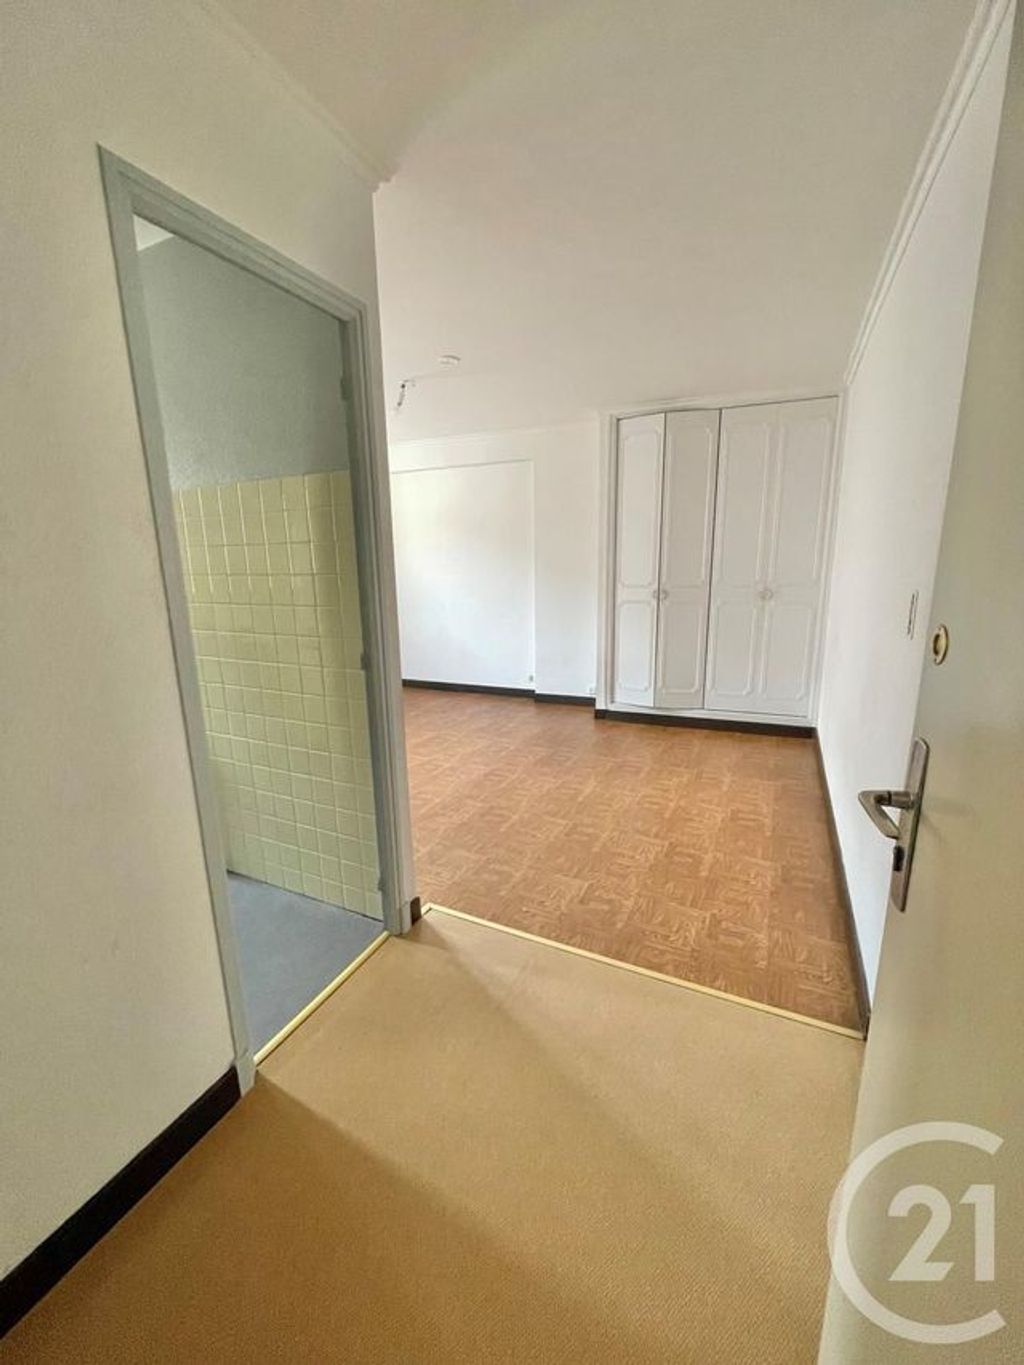 Achat appartement 2 pièces 44 m² - Rodez